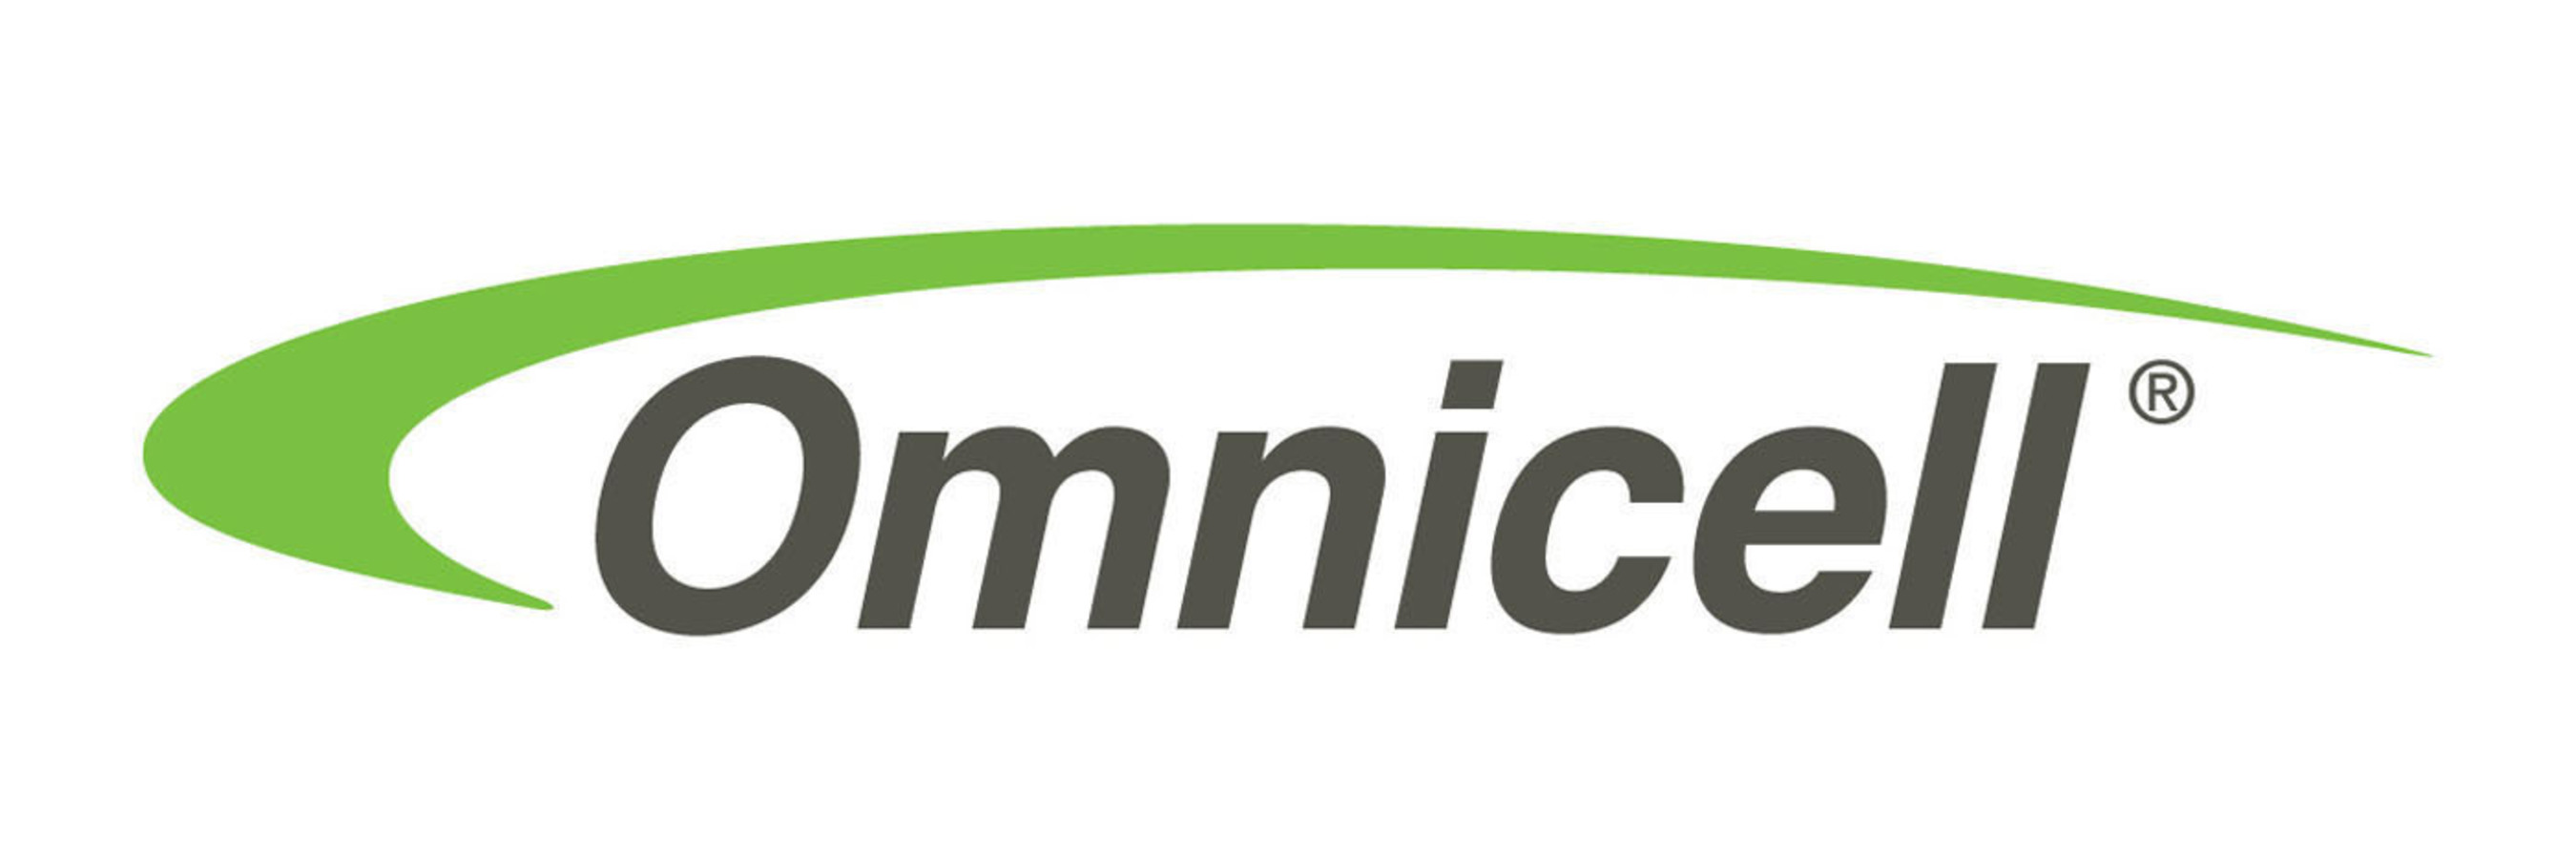 Omnicell, Inc. logo. (PRNewsFoto/Omnicell, Inc.) (PRNewsFoto/Omnicell, Inc.)